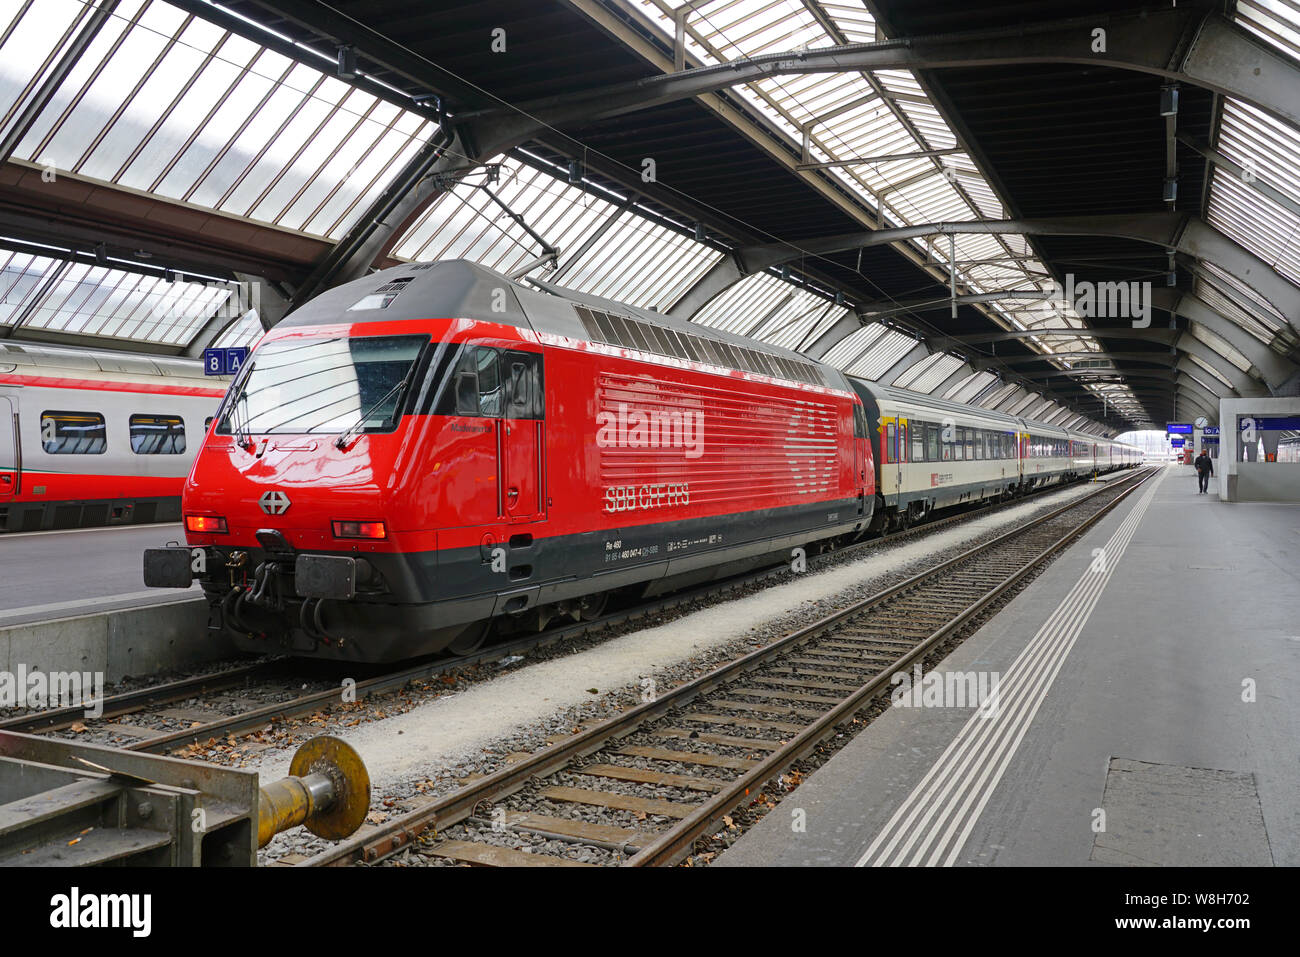 Zurigo, Svizzera -19 maggio 2019- i treni da FFS Ferrovie Federali Svizzere company (Schweizerische Bundesbahnen) a Zurigo stazione ferroviaria. Foto Stock